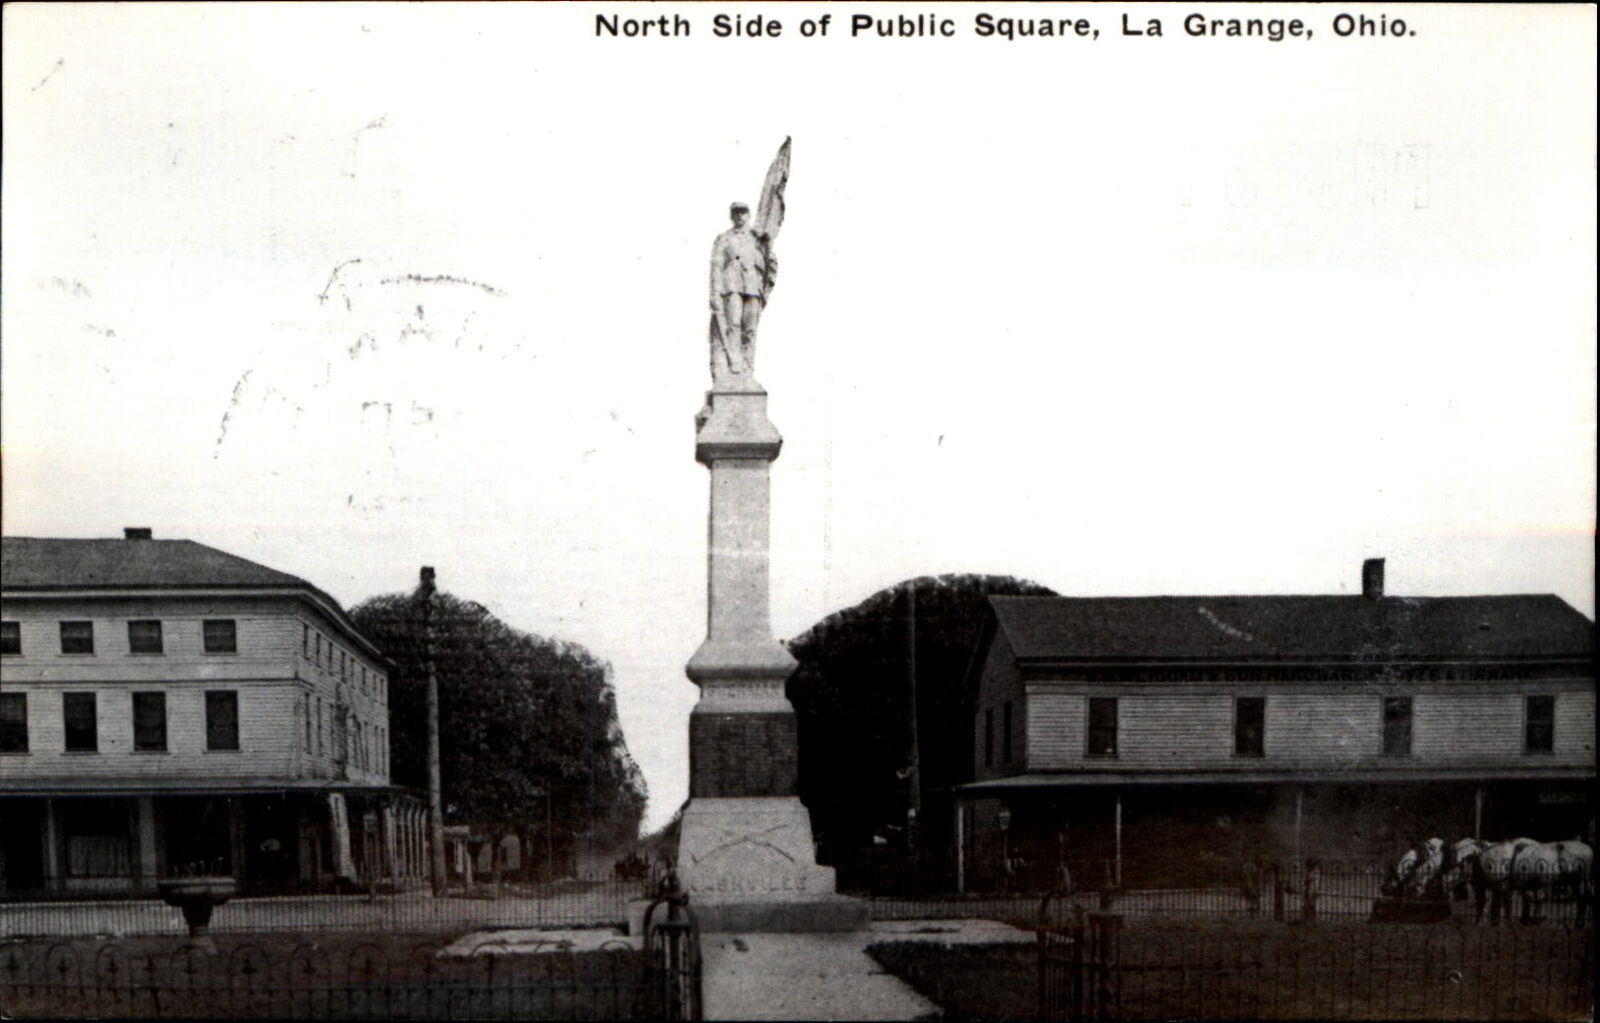 North side Public Square~La Grange Ohio~Civil War Monument~repro on RPPC paper